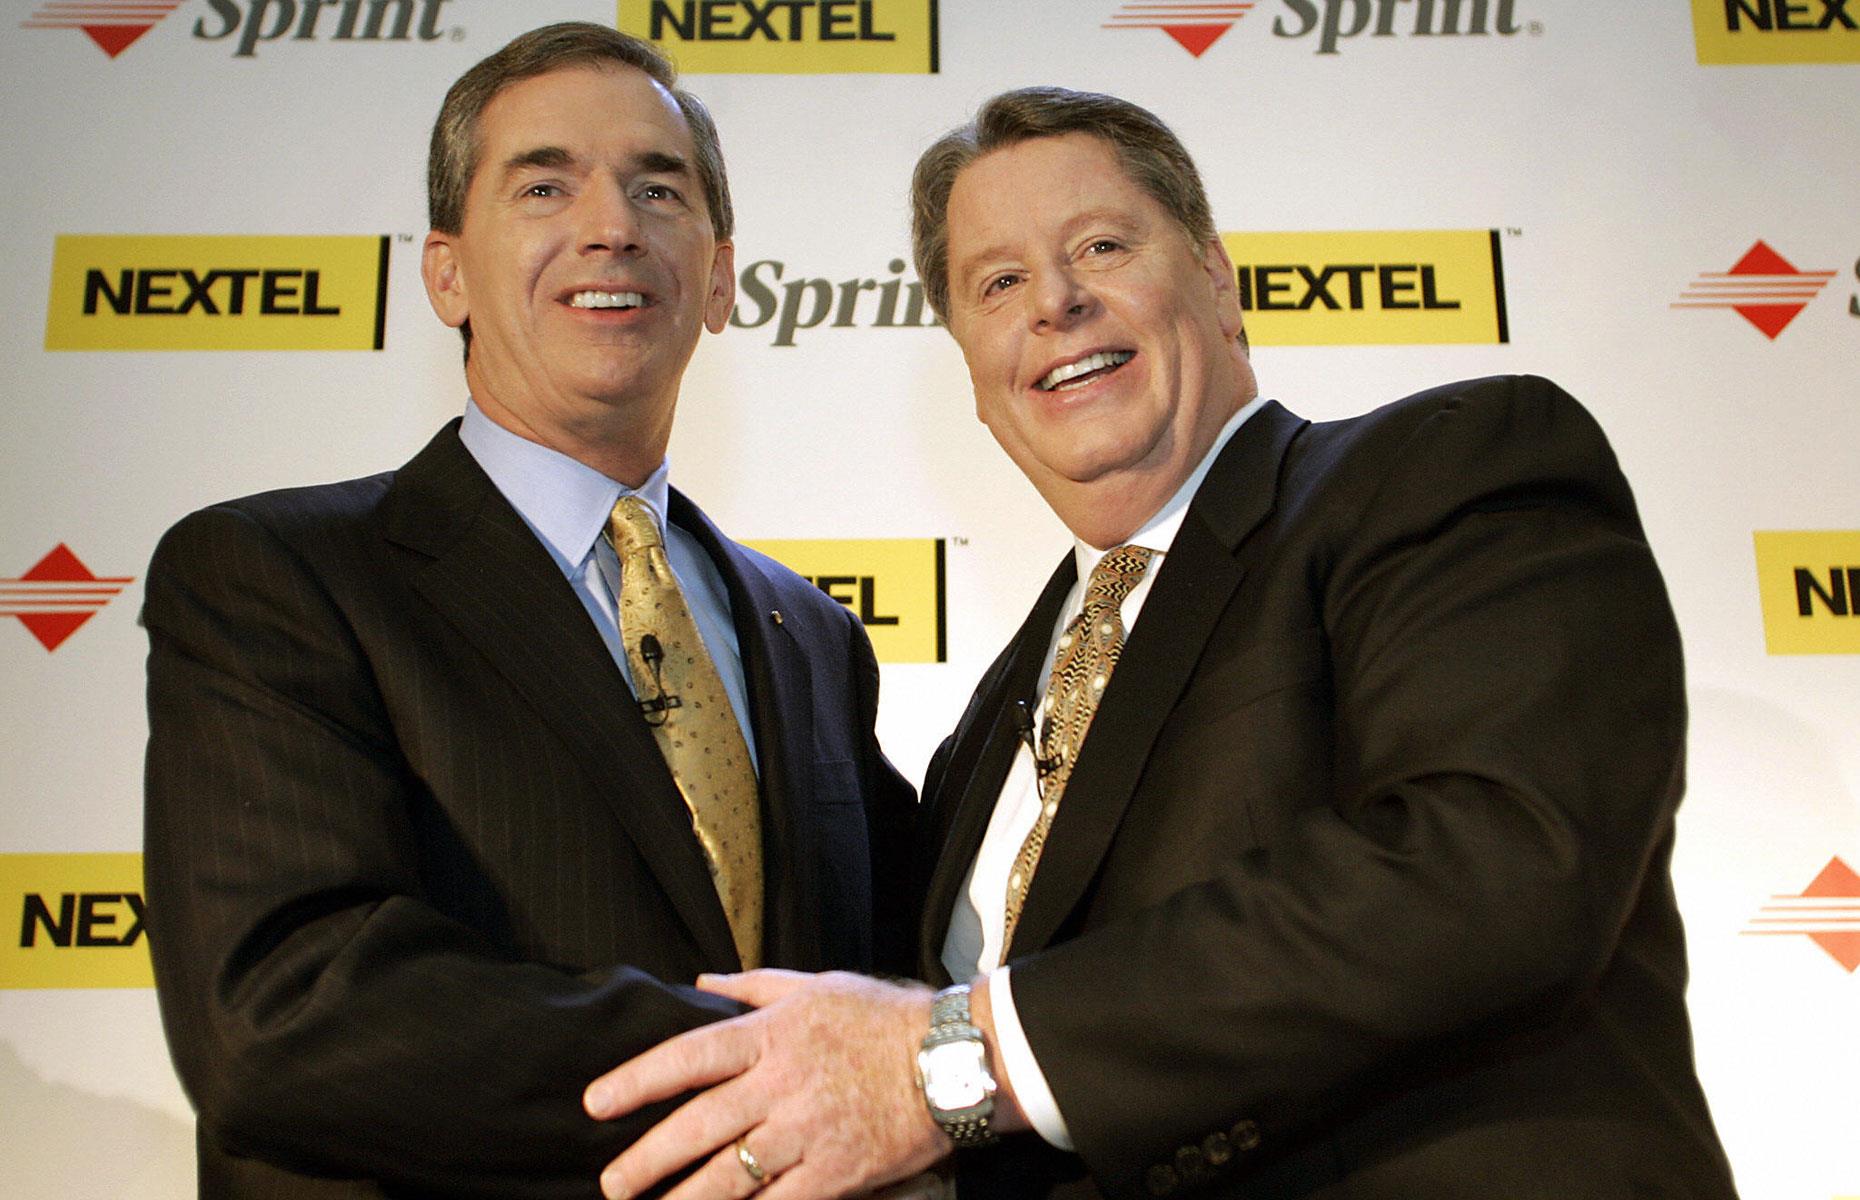 Sprint & Nextel in 2005